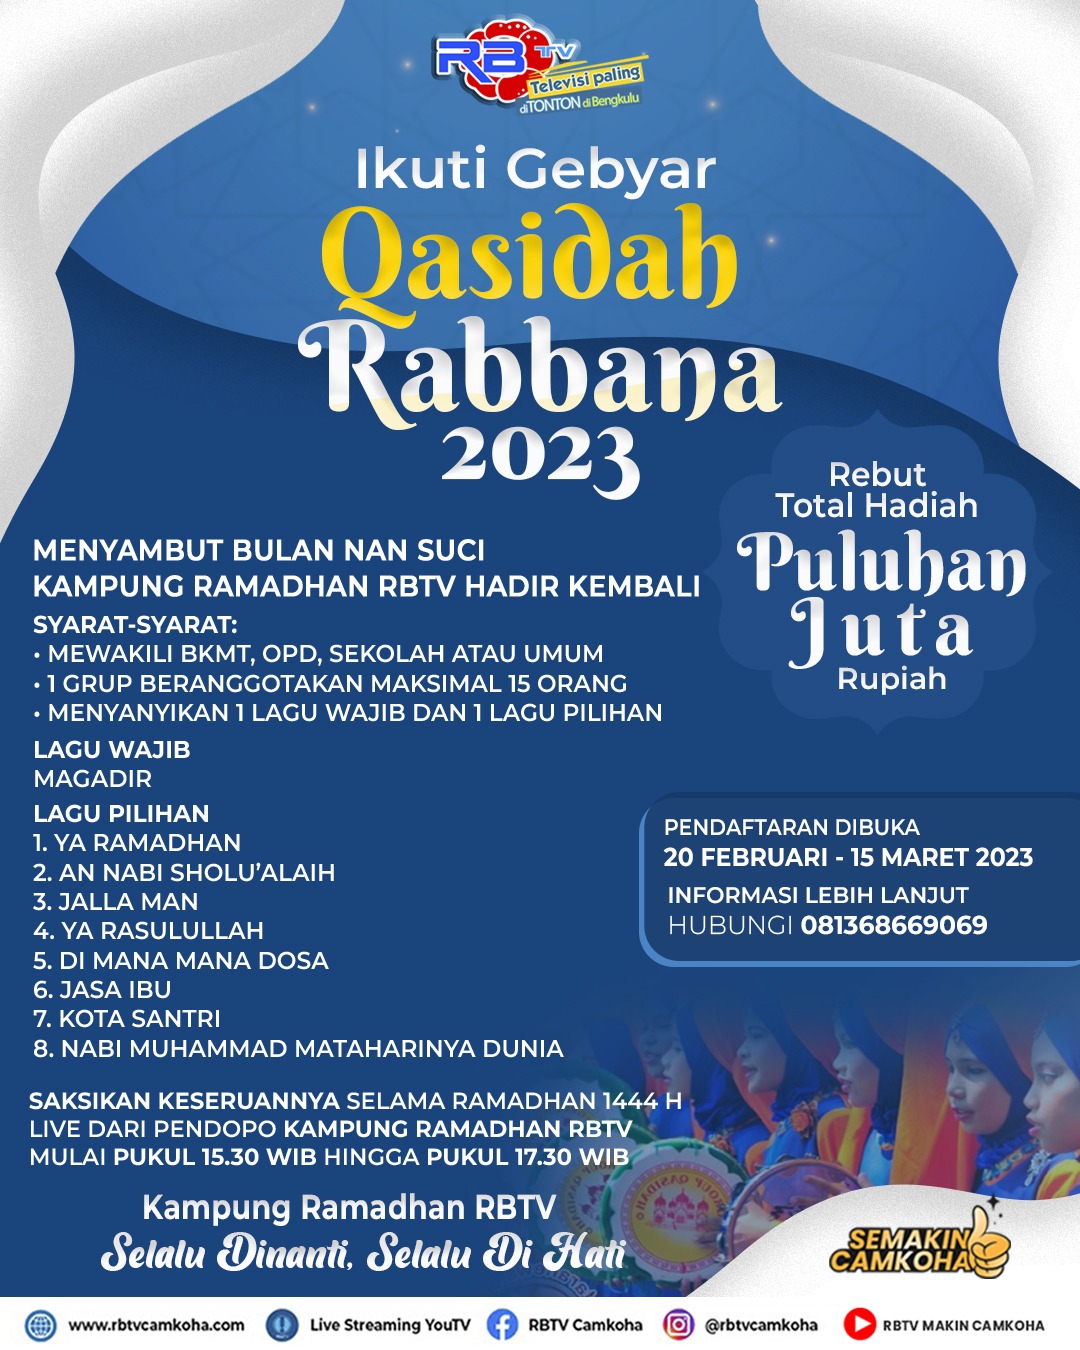 Festival Qasidah Rabbana Kampung Ramadan RBTV Seru, Ini Pesertanya 